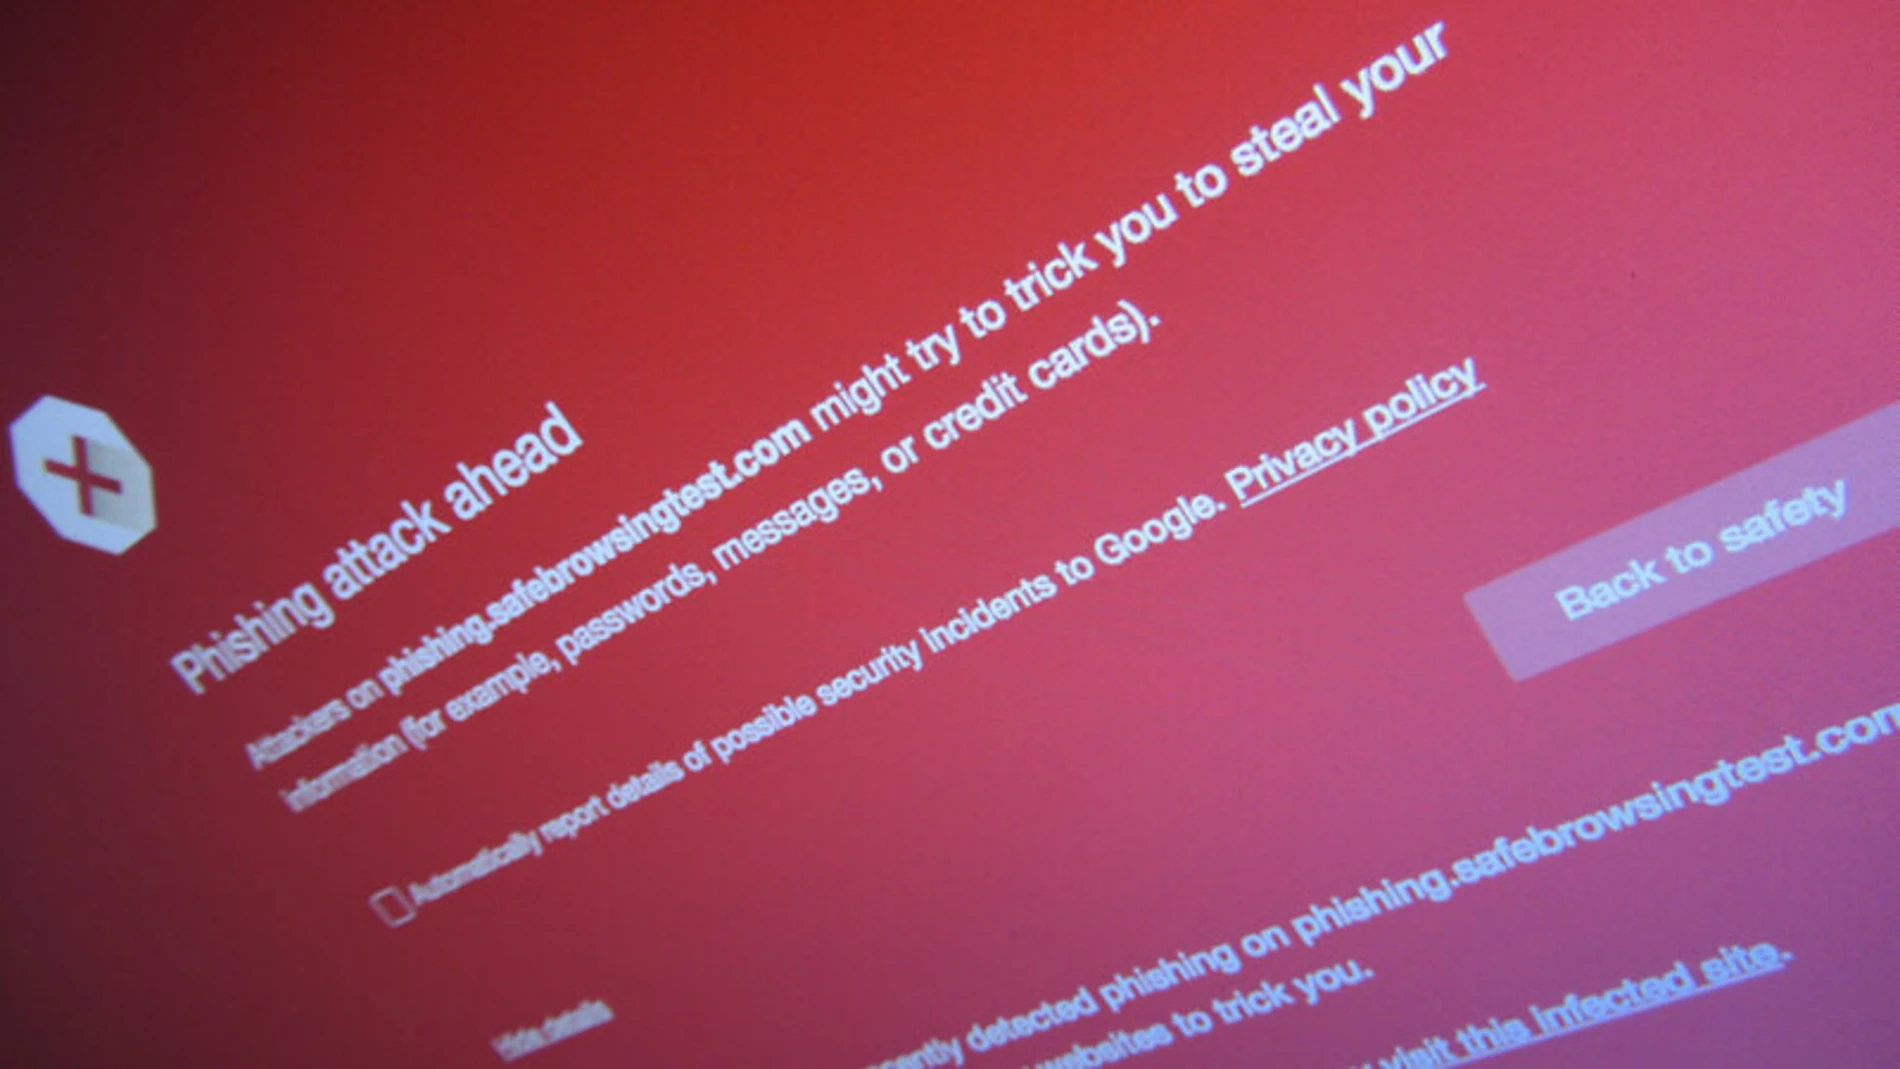 Aviso de "phishing" que muestra el navegador Chrome cuando se trata de acceder a una web identificada como fraudulenta.